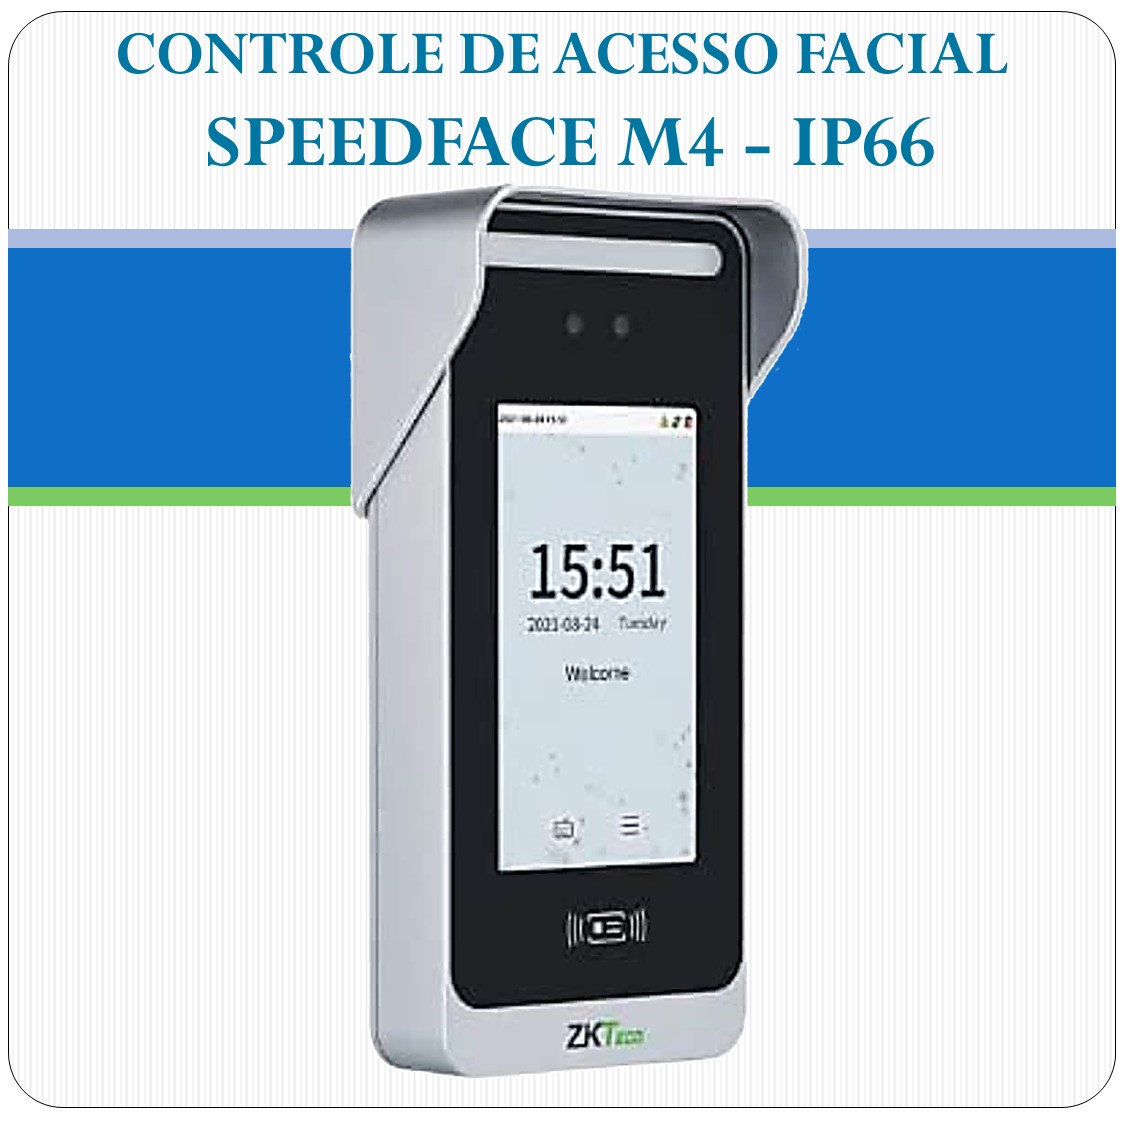 Controle de Acesso Facial SpeedFace M4 - IP66